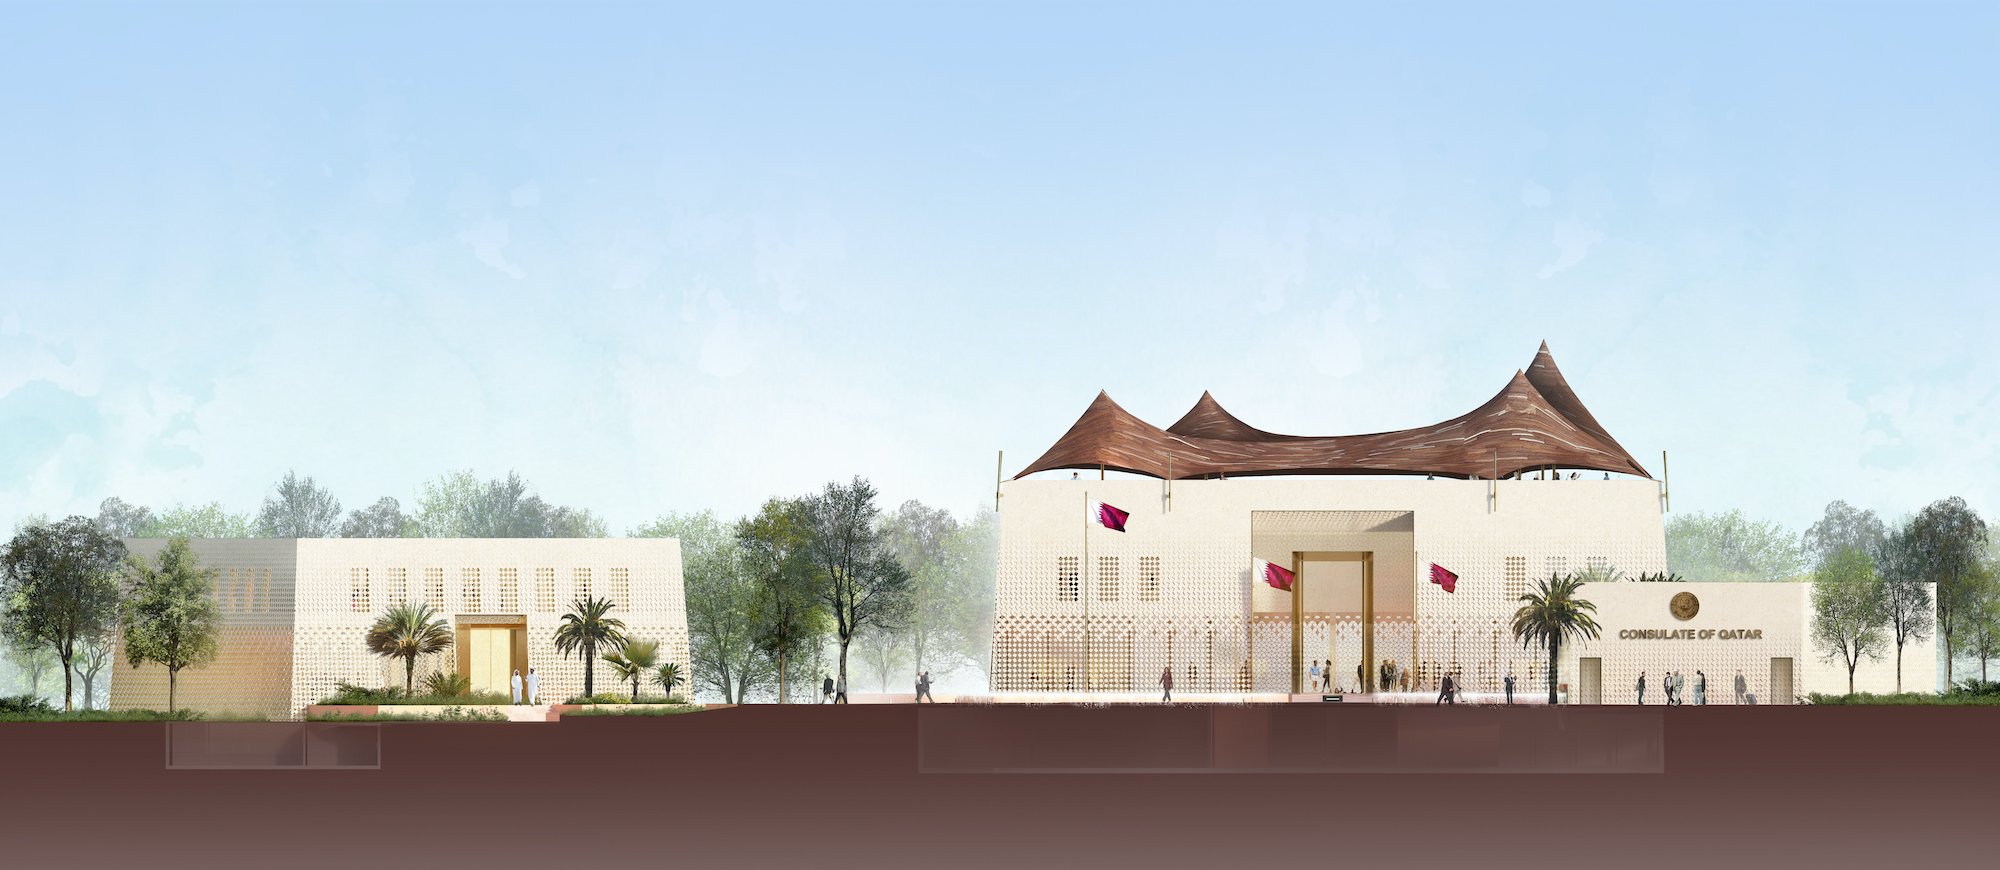 BOIFFILS-Qatar Embassy Canberra-Facade-East.jpg